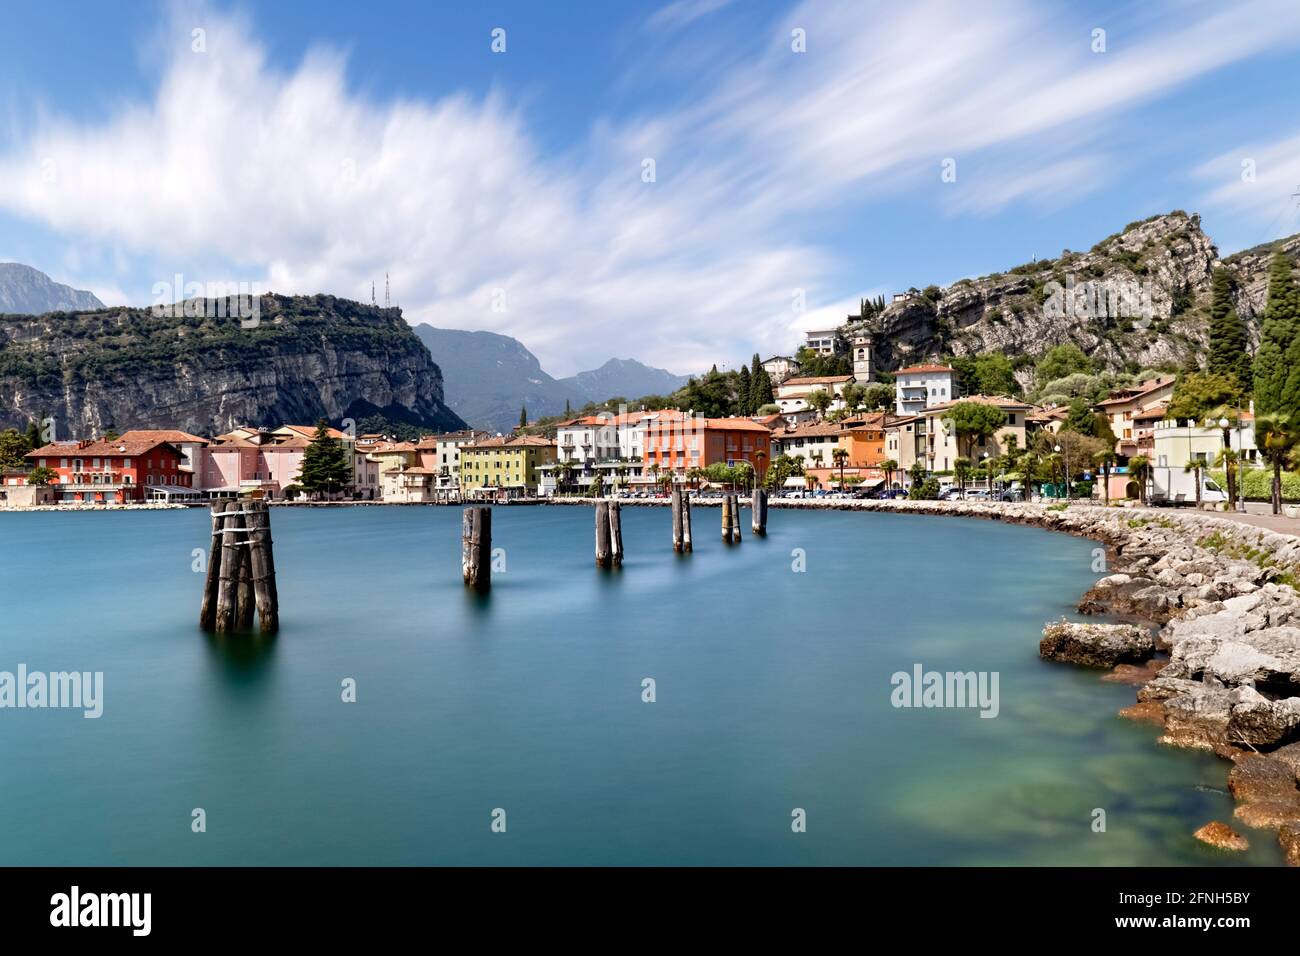 Il paese di Torbole sul Lago di Garda. Provincia di Trento, Trentino Alto Adige, Italia, Europa. Foto Stock